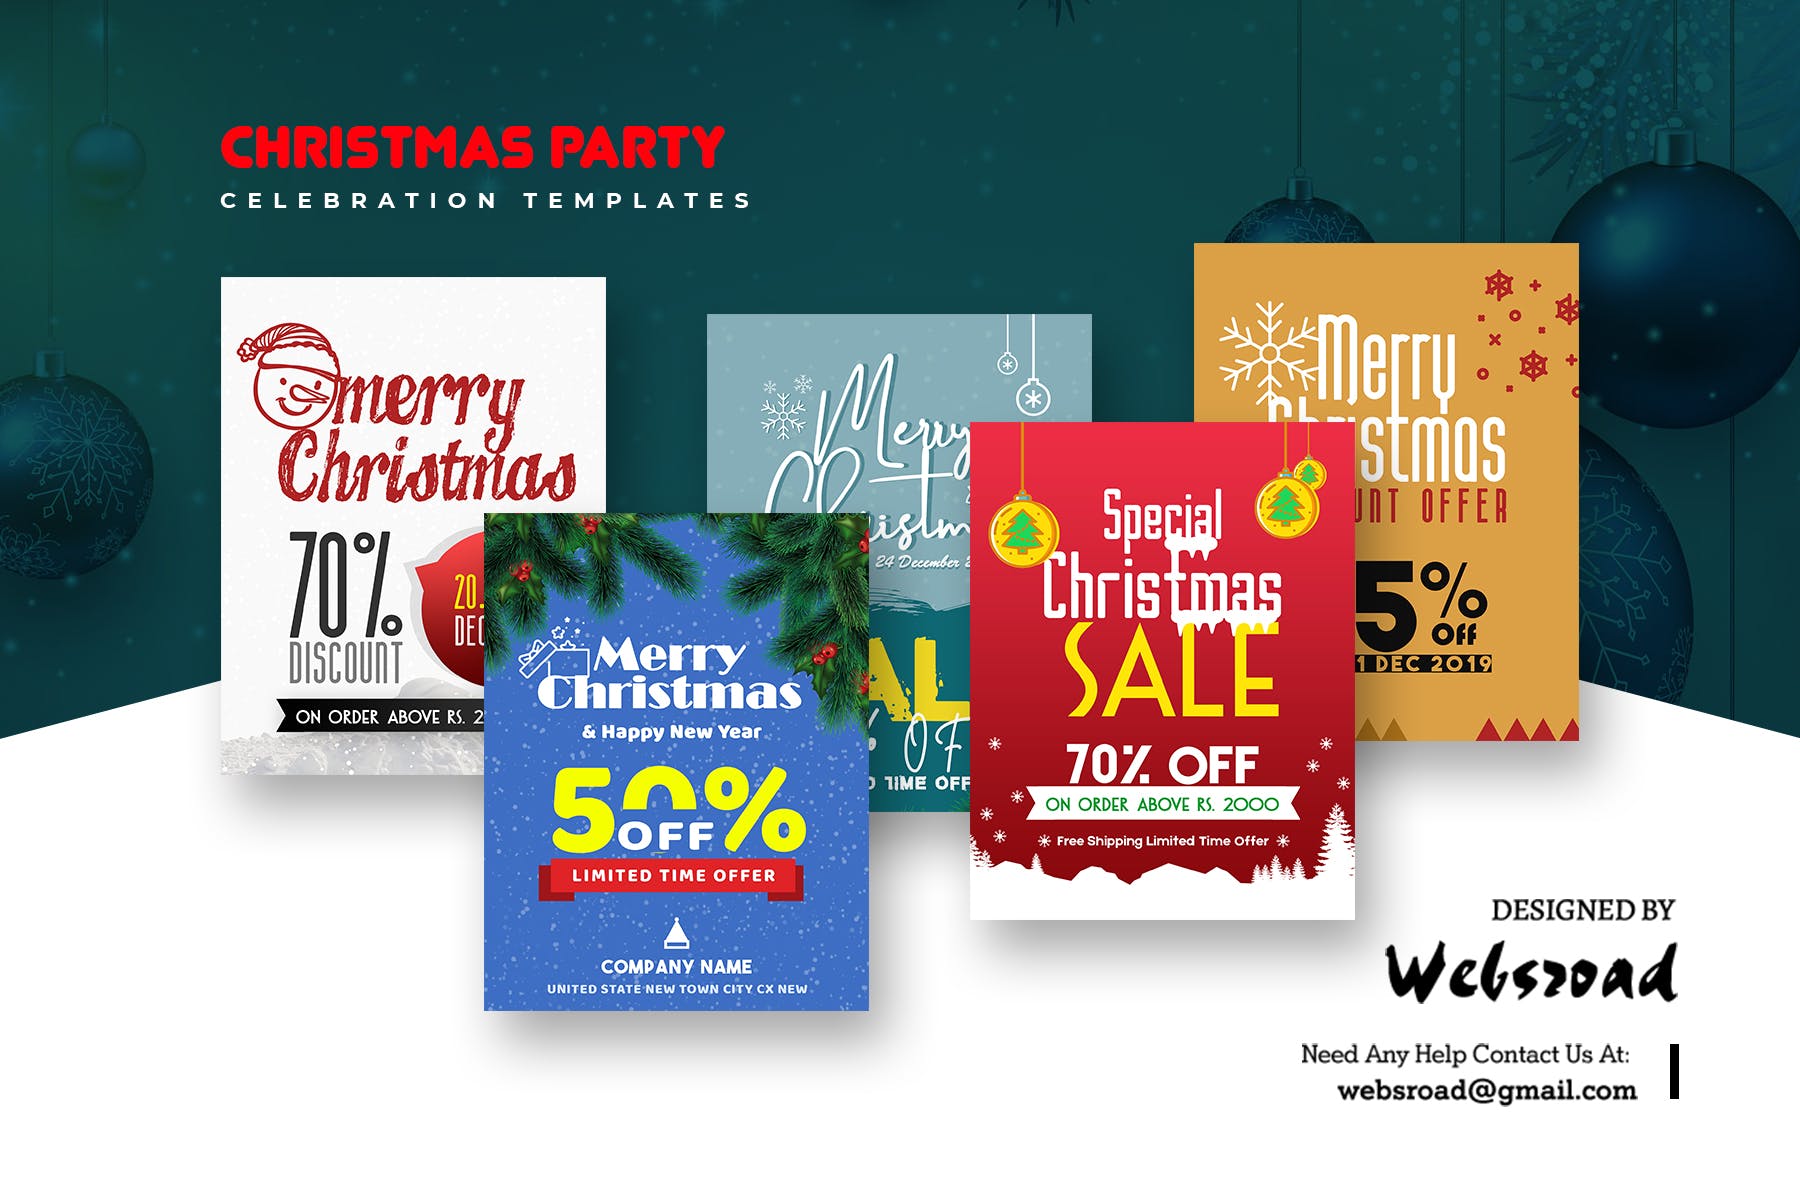 圣诞节主题促销活动素材库精选广告模板合集 Christmas Party Celebration Templates插图